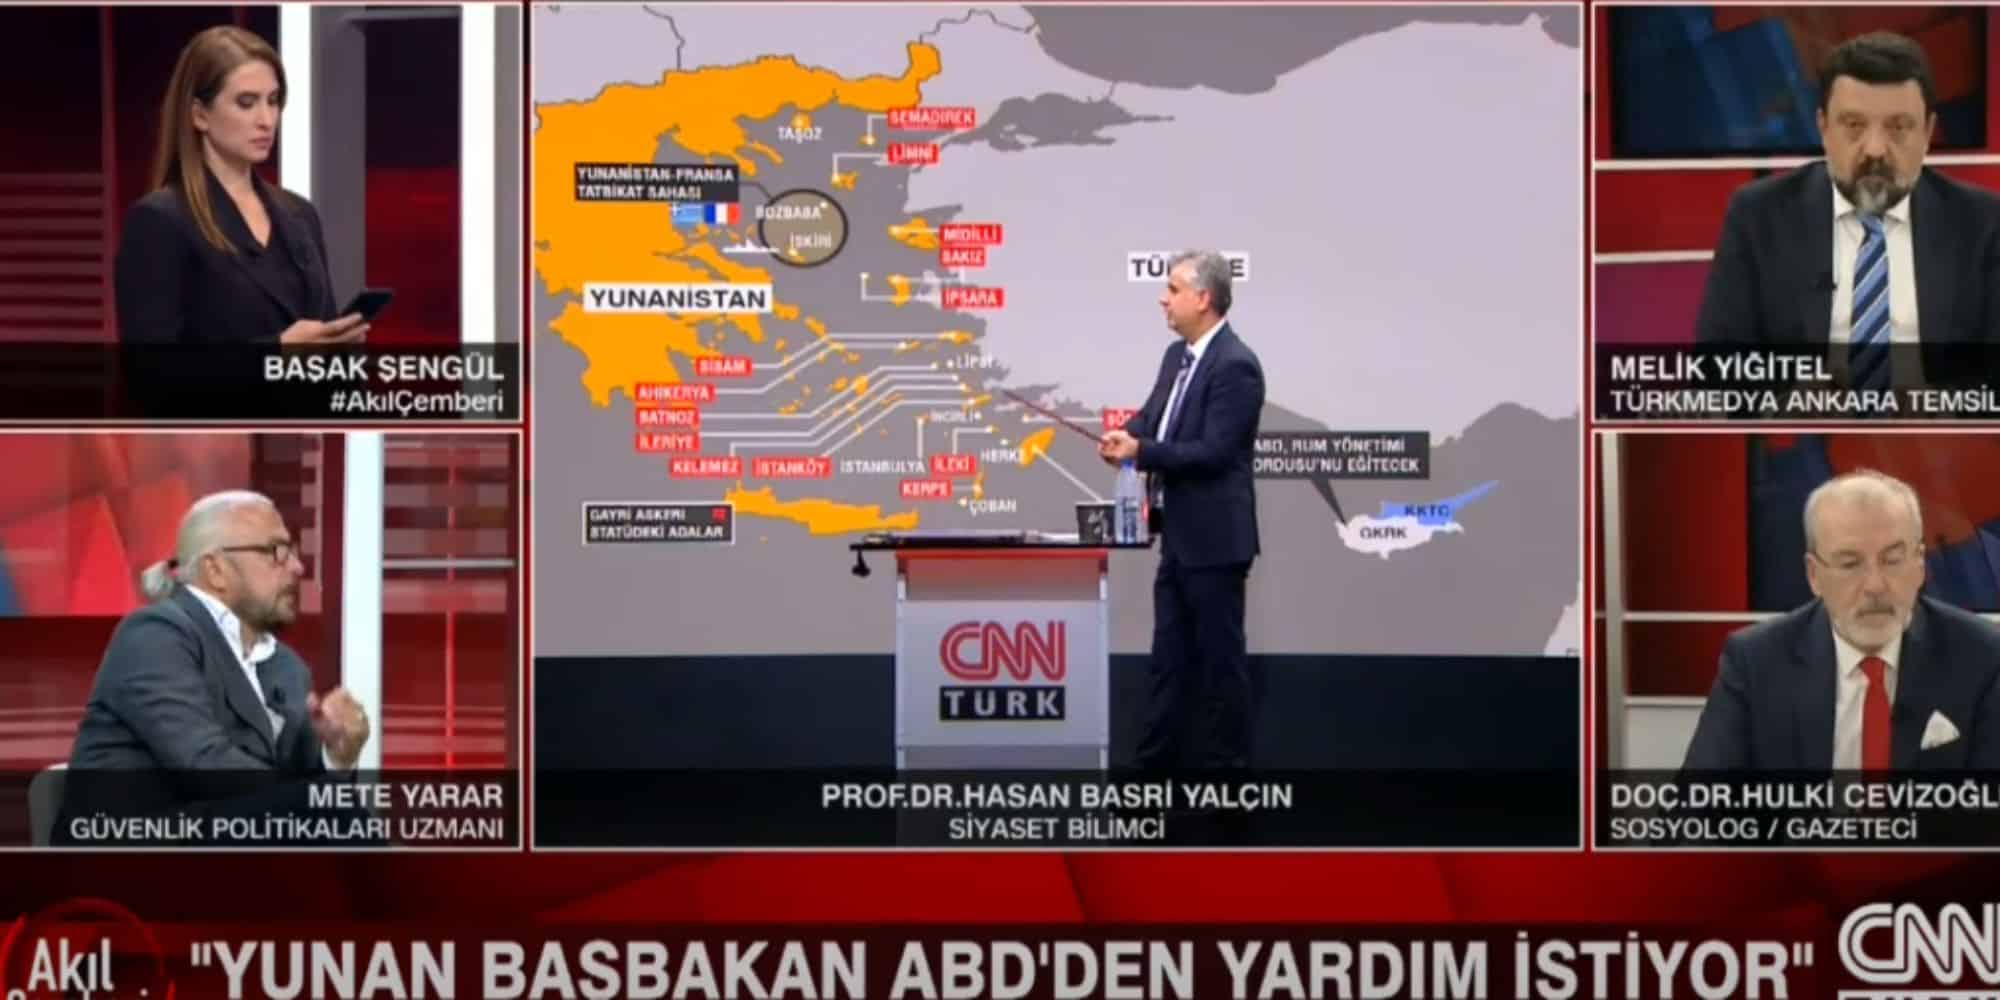 Εικόνα από το πάνελ του CNN Turk